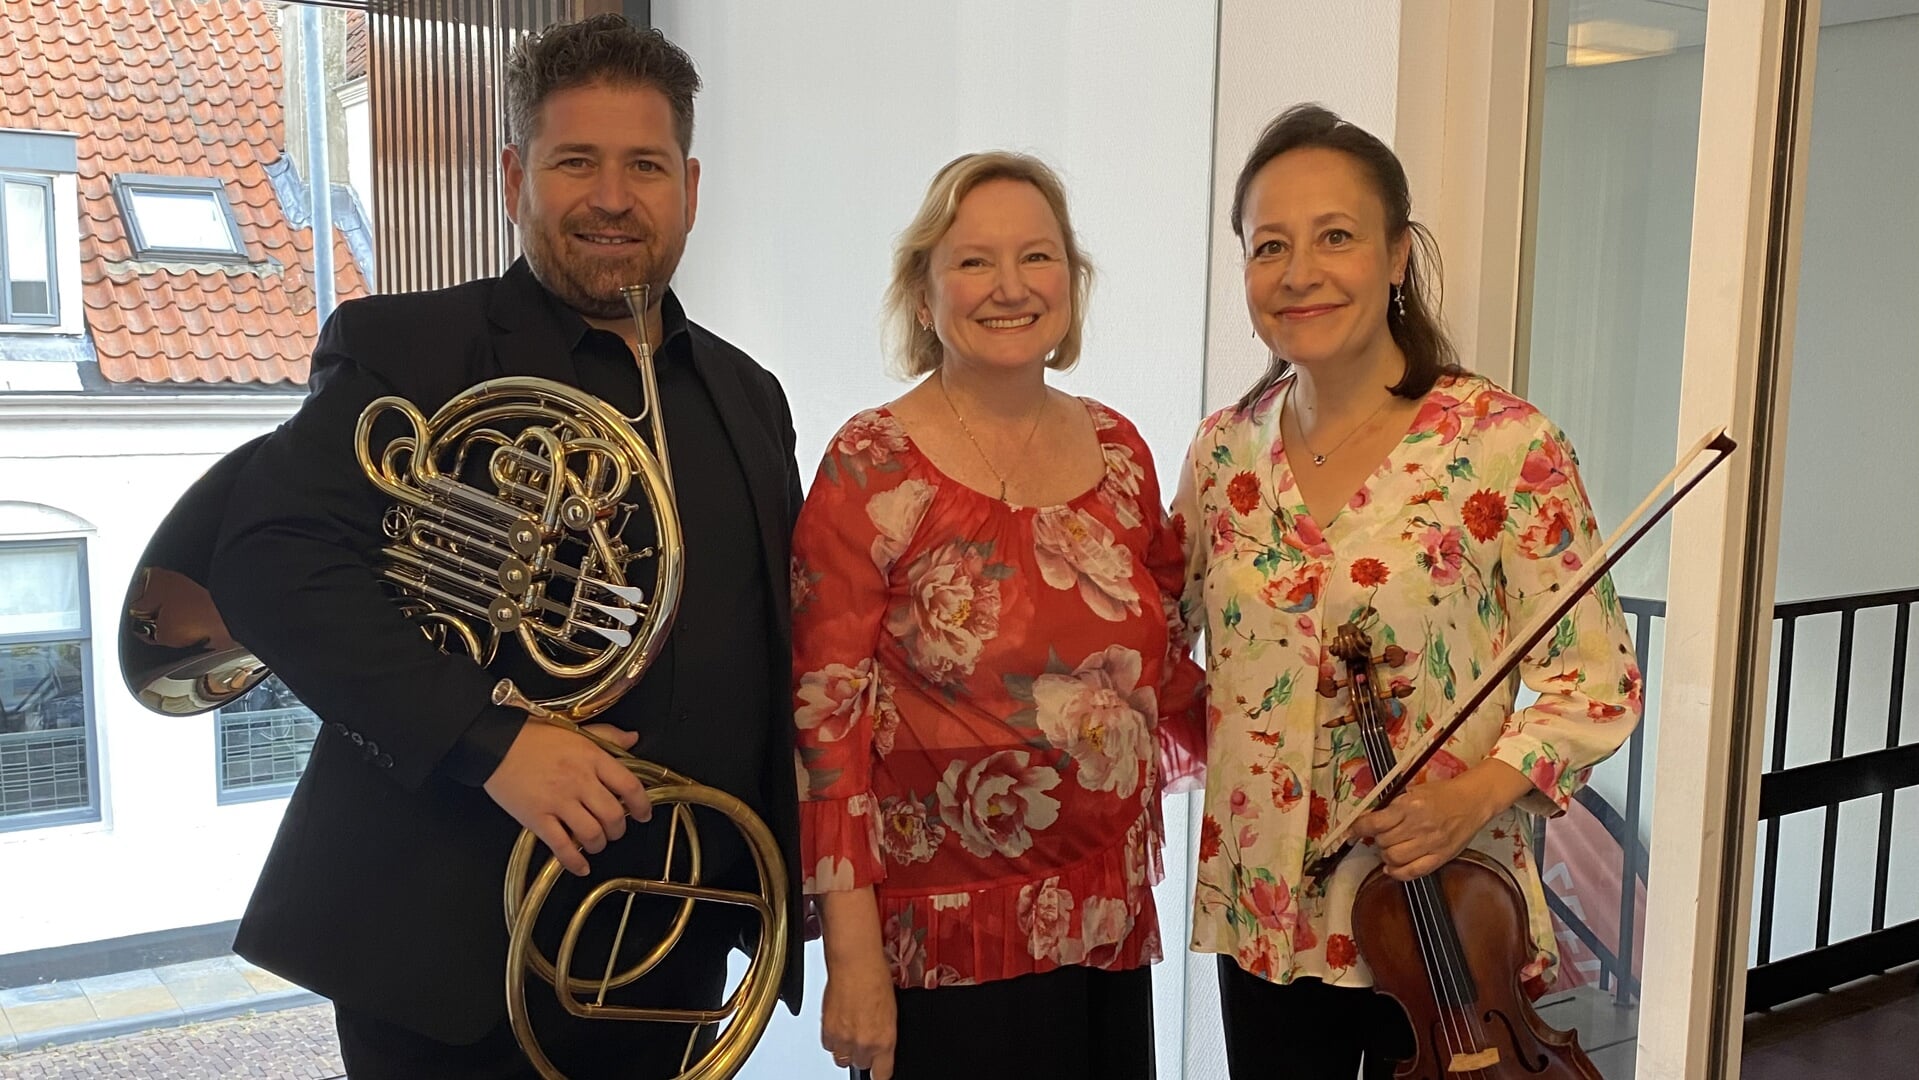 Het Delft Trio treedt zaterdagavond op in de RK-kerk van Berkel. Van links naar rechts: David, Lauretta en Quirine.